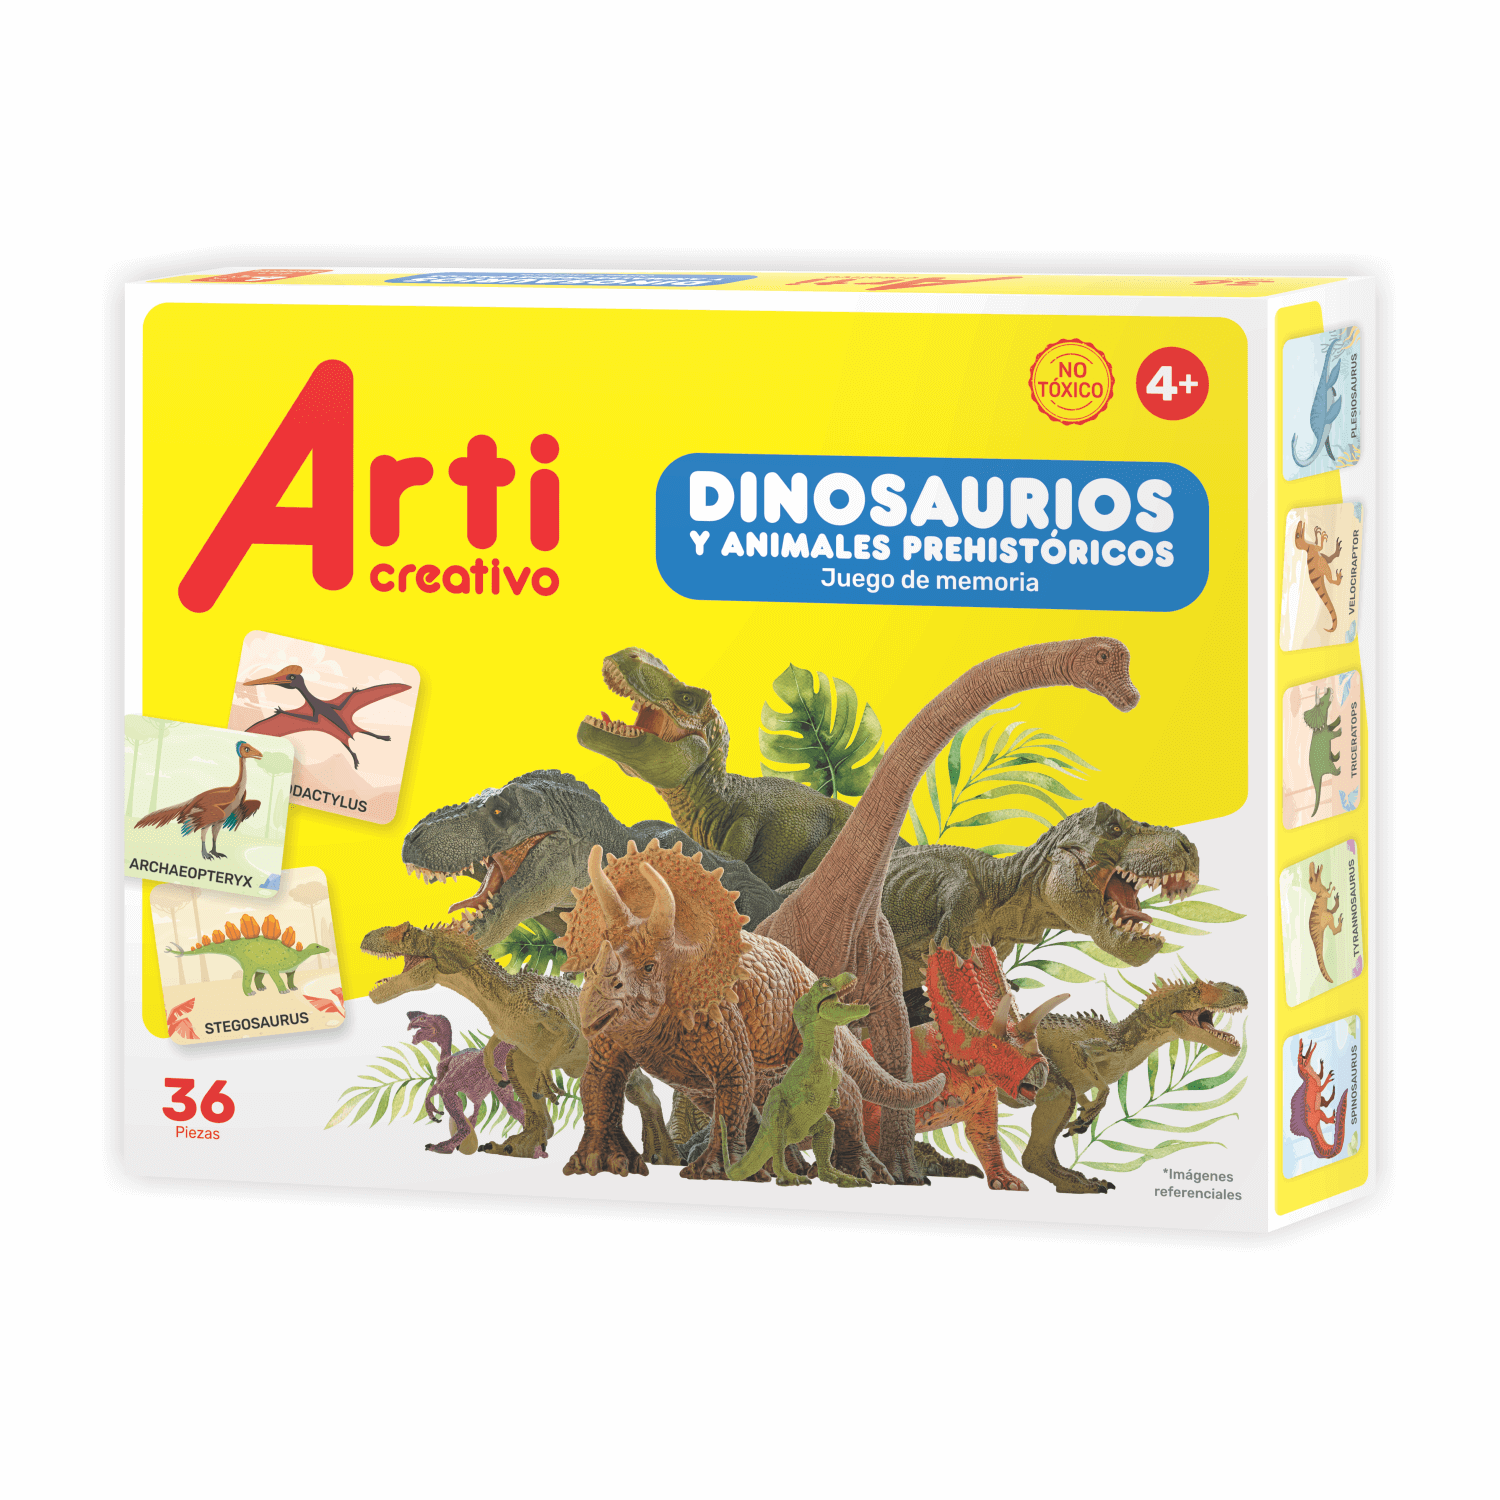 Juguetes Pack de 6 Dinosaurios Grandes y Suaves Divertido I